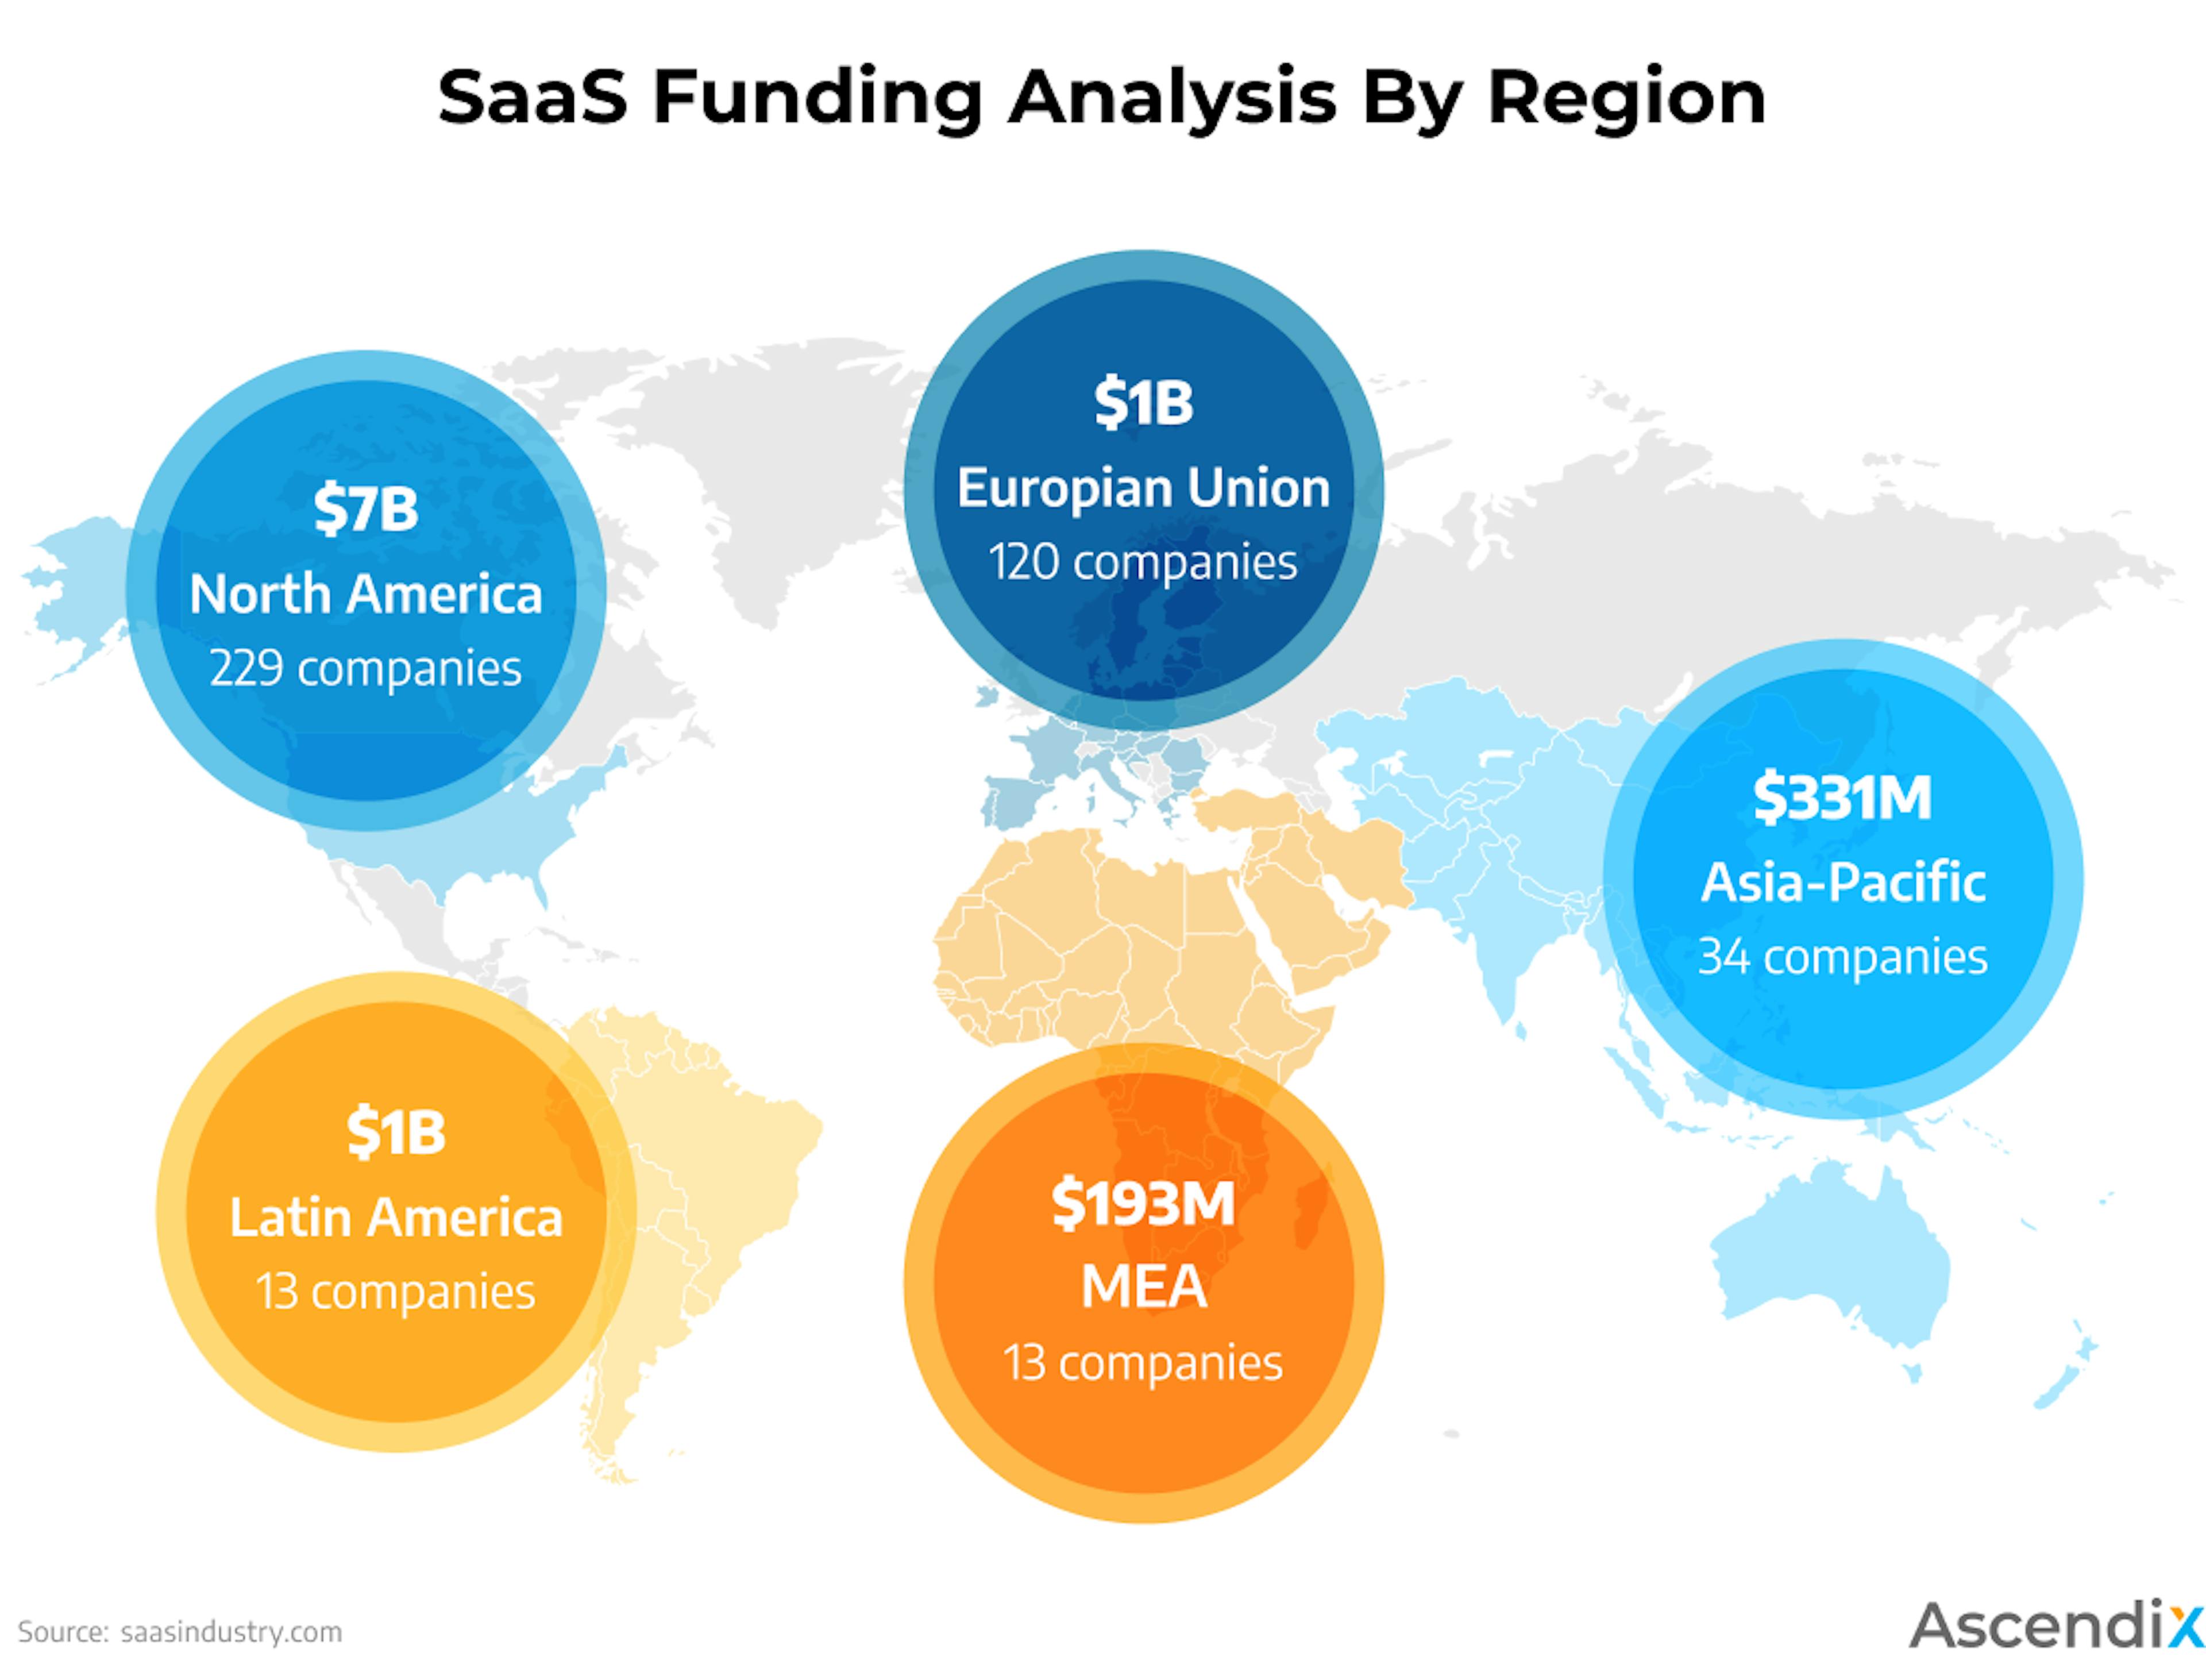 SaaS Funding Amounts by Region | Source: SaaS Funding Report - JFM 2021